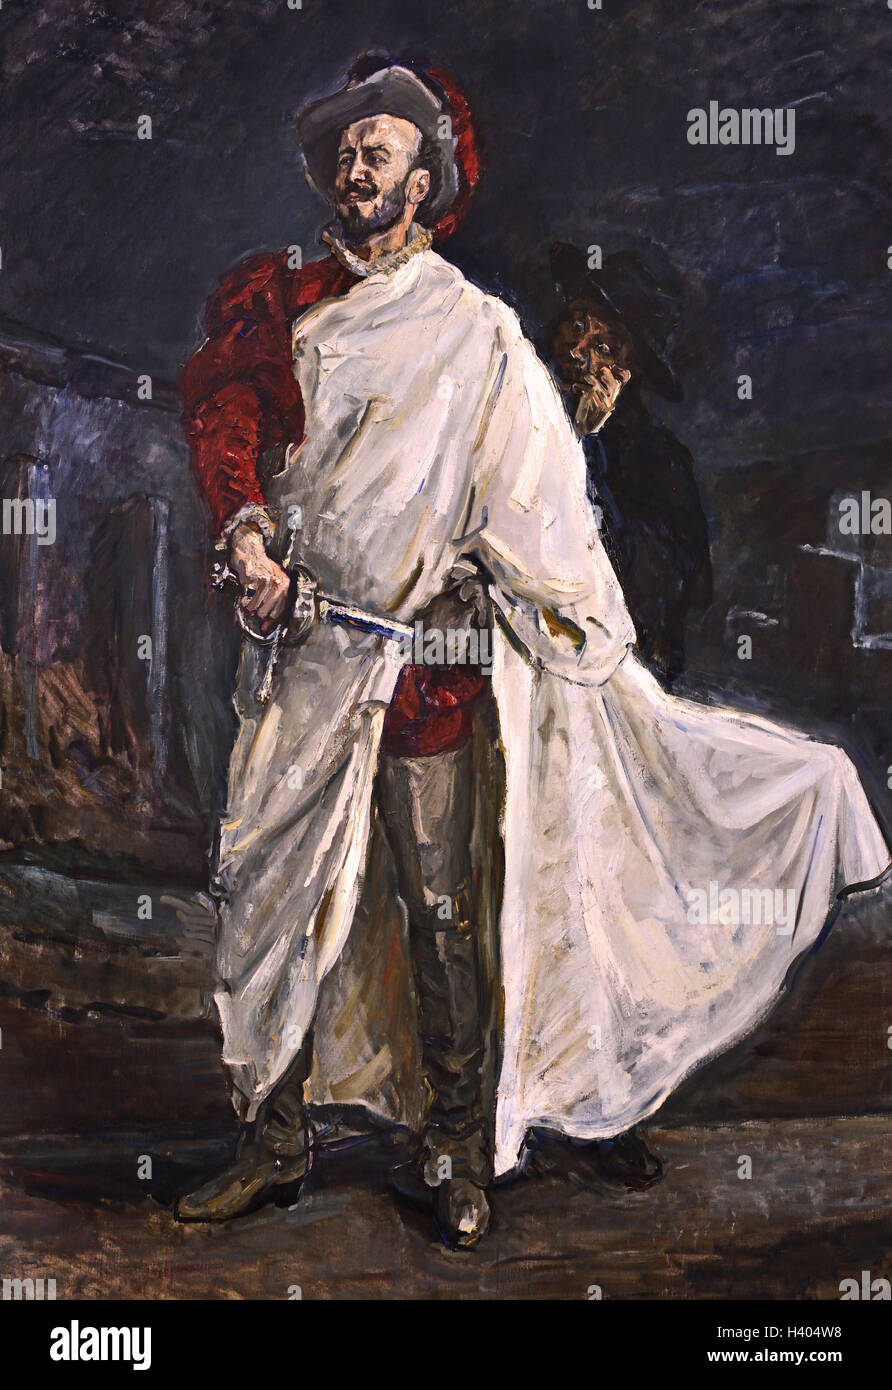 Le chanteur Francisco d'Andrade comme Don Giovanni à l'opéra de Mozart (le rouge d'Andrade) 1902 Max Slevogt Allemand Allemagne ( Opera Mozart ) Banque D'Images